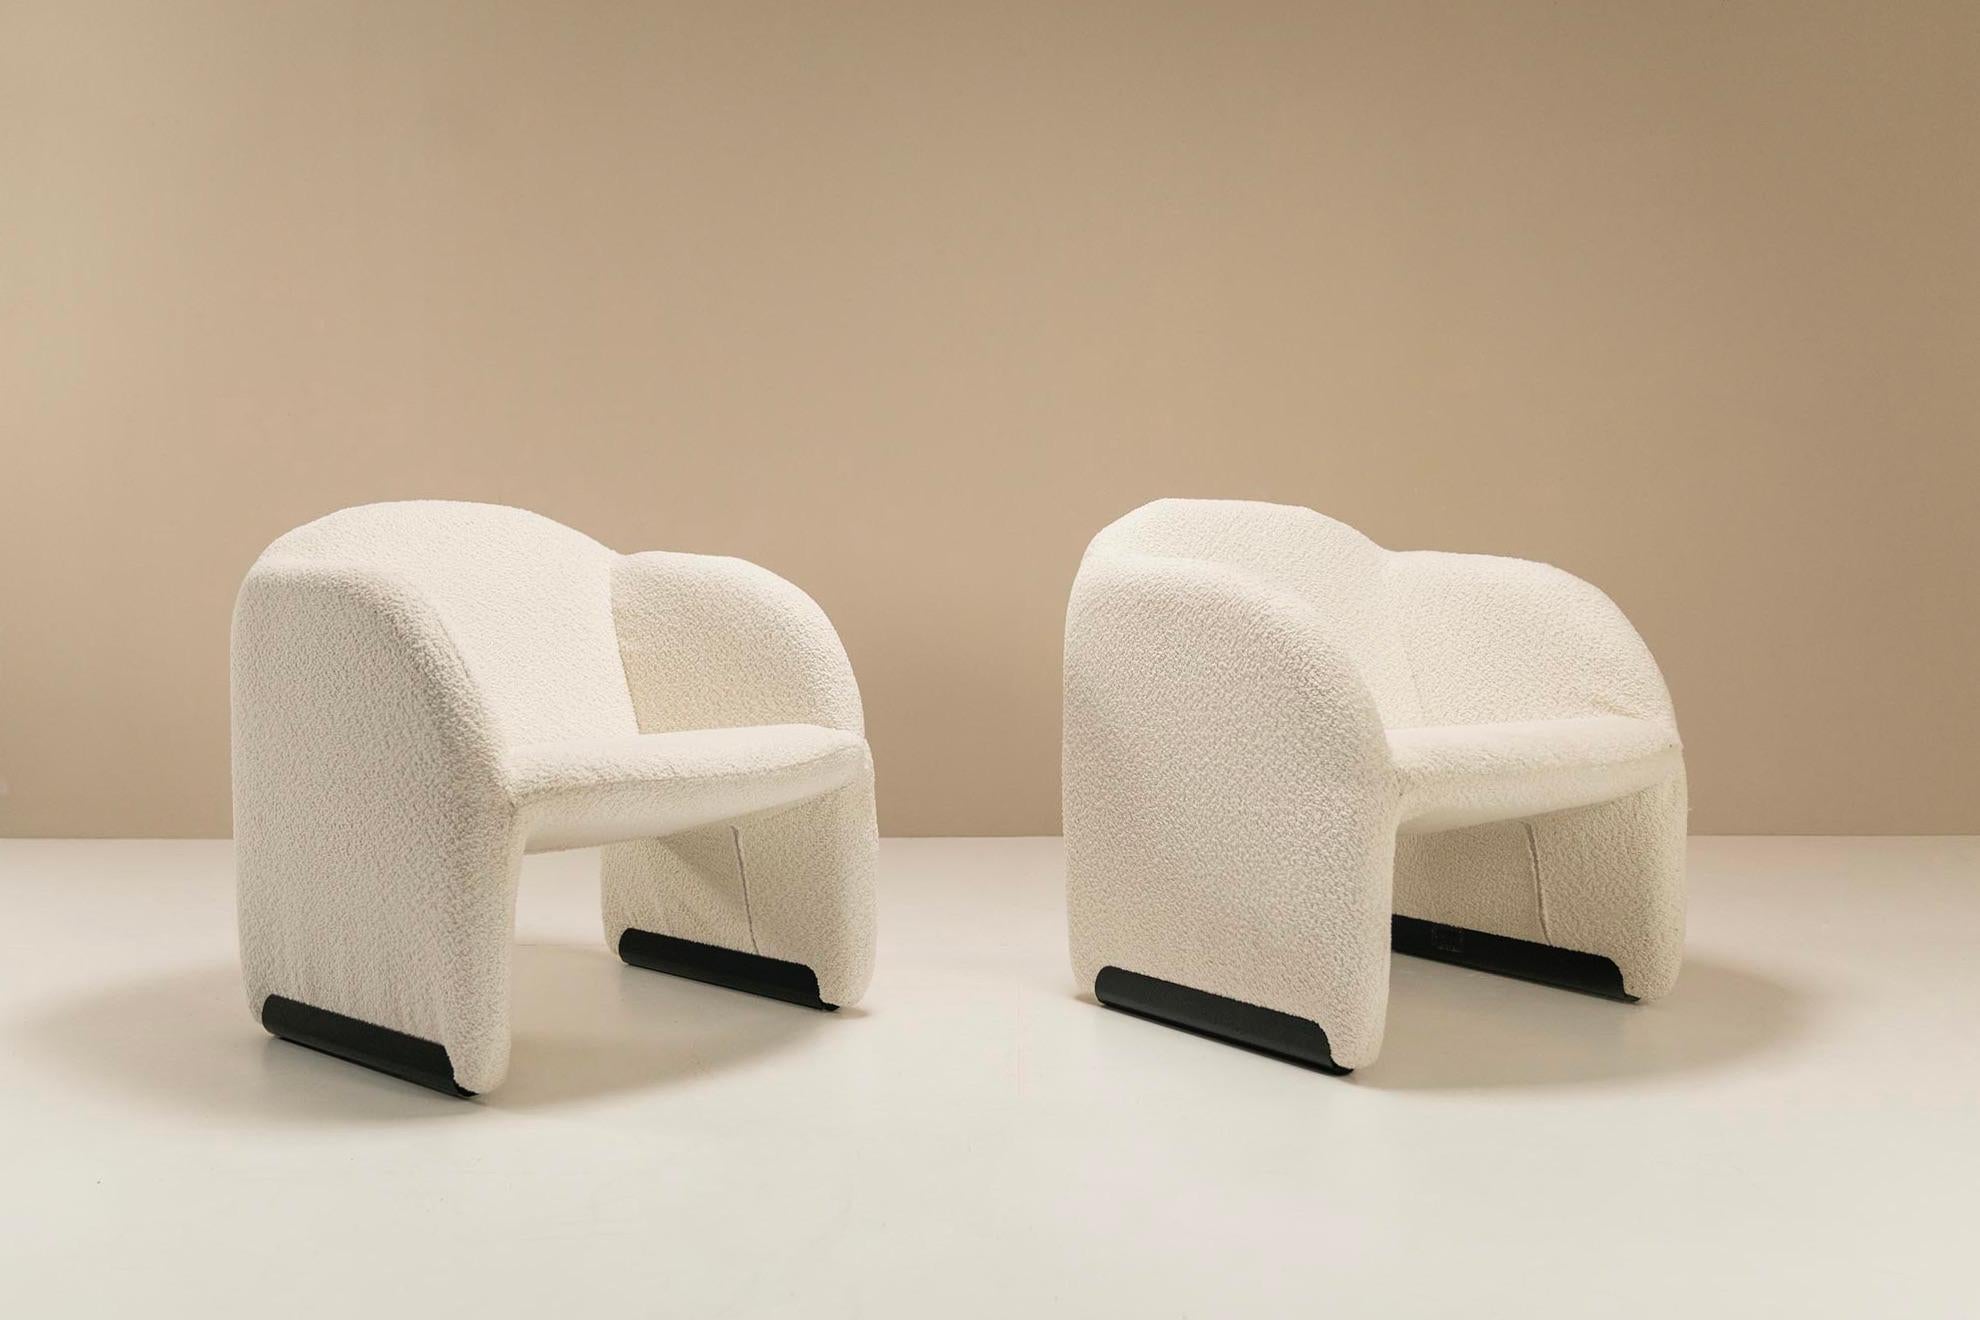 Dies sind zwei klassische Artifort-Sessel, die von dem französischen Designer Pierre Paulin entworfen wurden. Dieses Modell heißt 